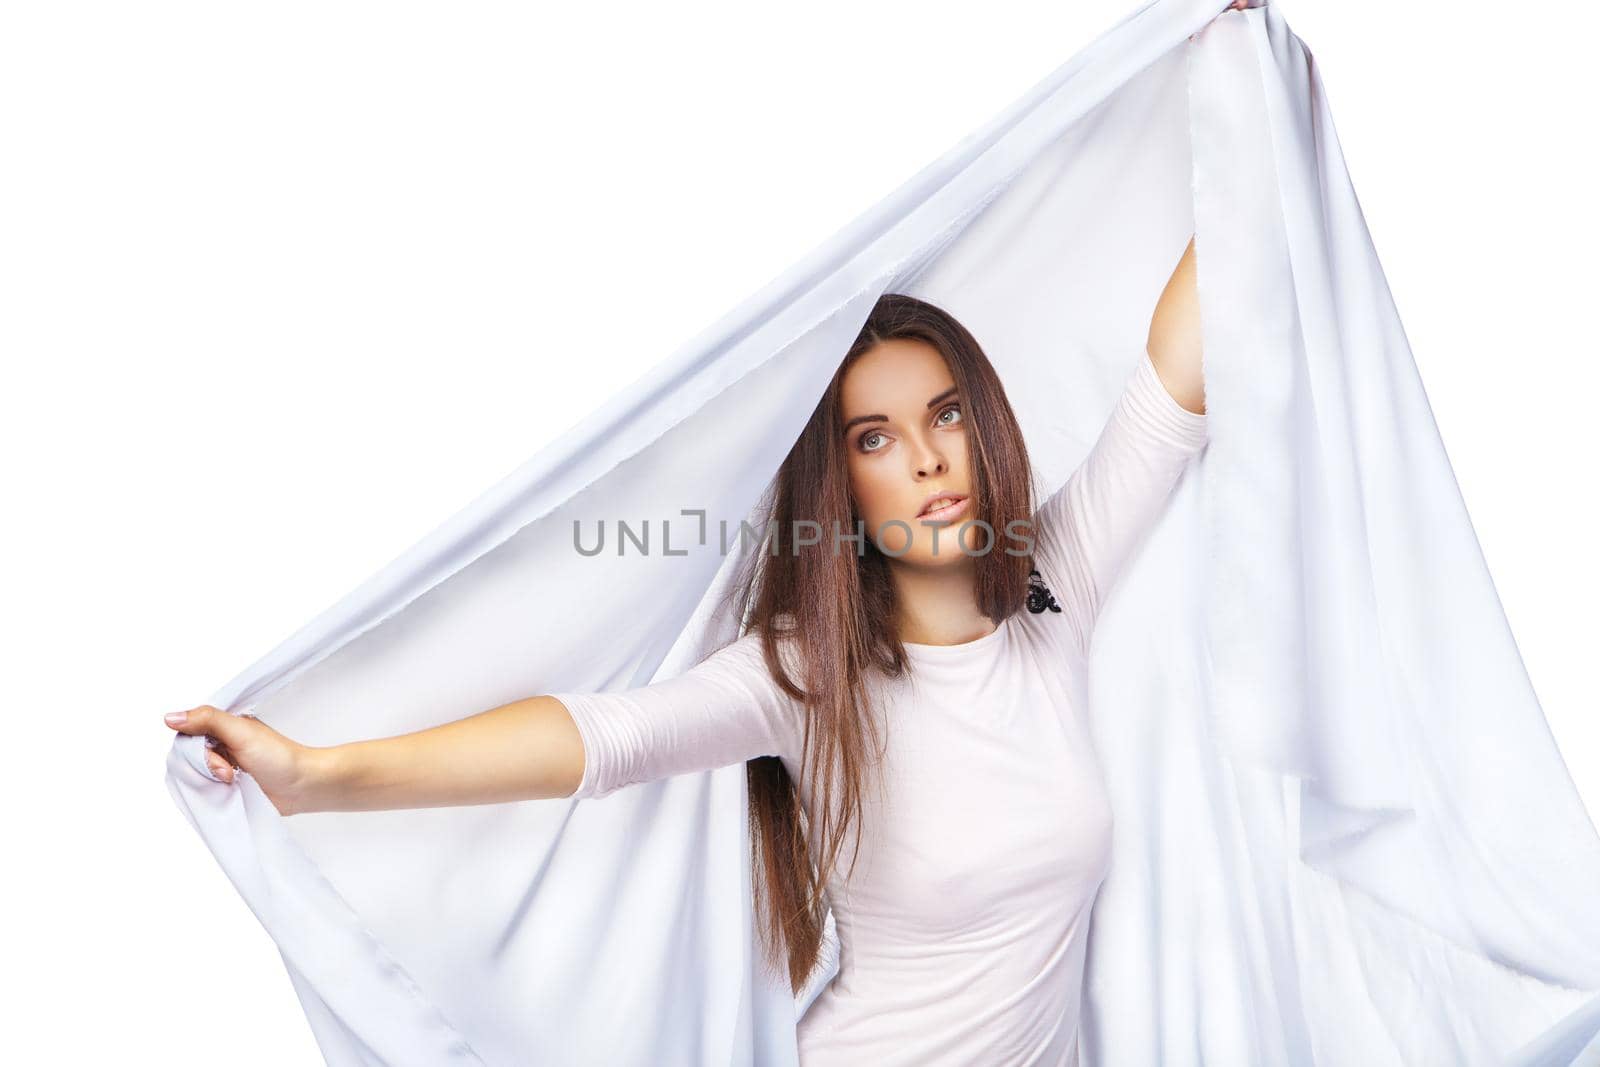 Sexy woman wearing white dress isolated by Julenochek